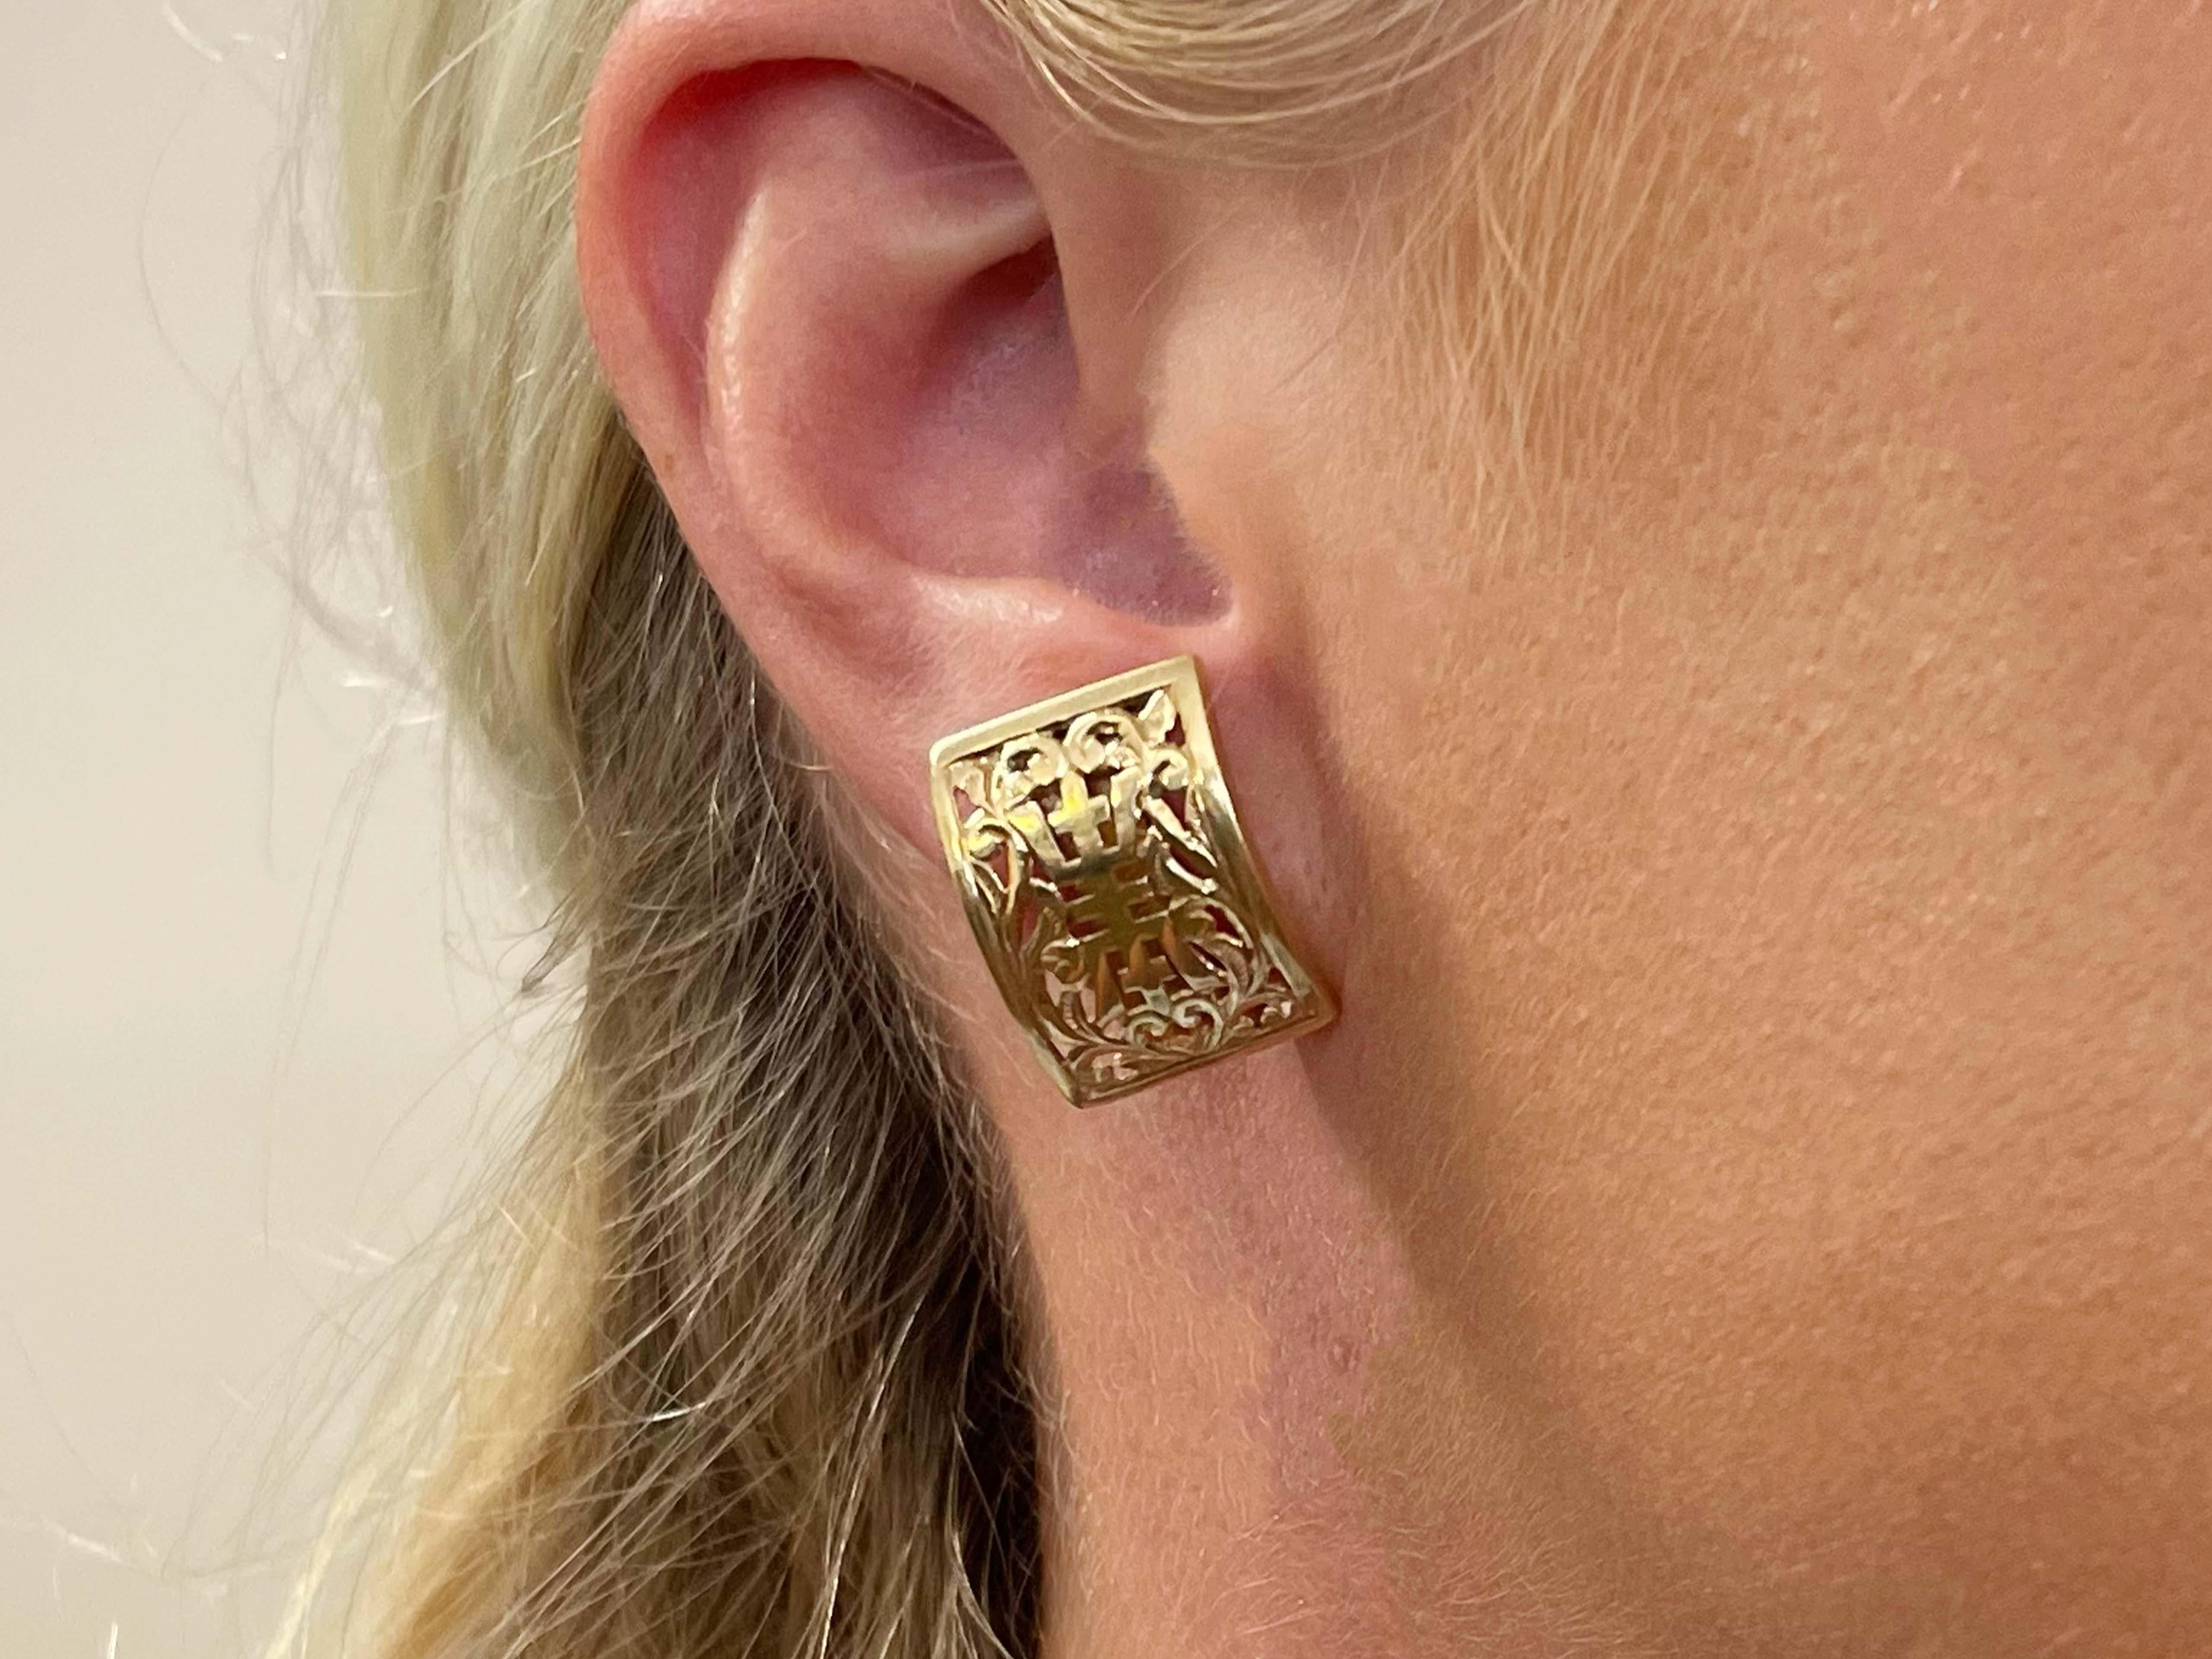 Ohrringe Spezifikationen:

Designer: Ming's

Metall: 14K Gelbgold

Gesamtgewicht: 6,1 Gramm

Abmessungen der Ohrringe Breite: 19,5 mm x 15 mm

Gestempelt: 